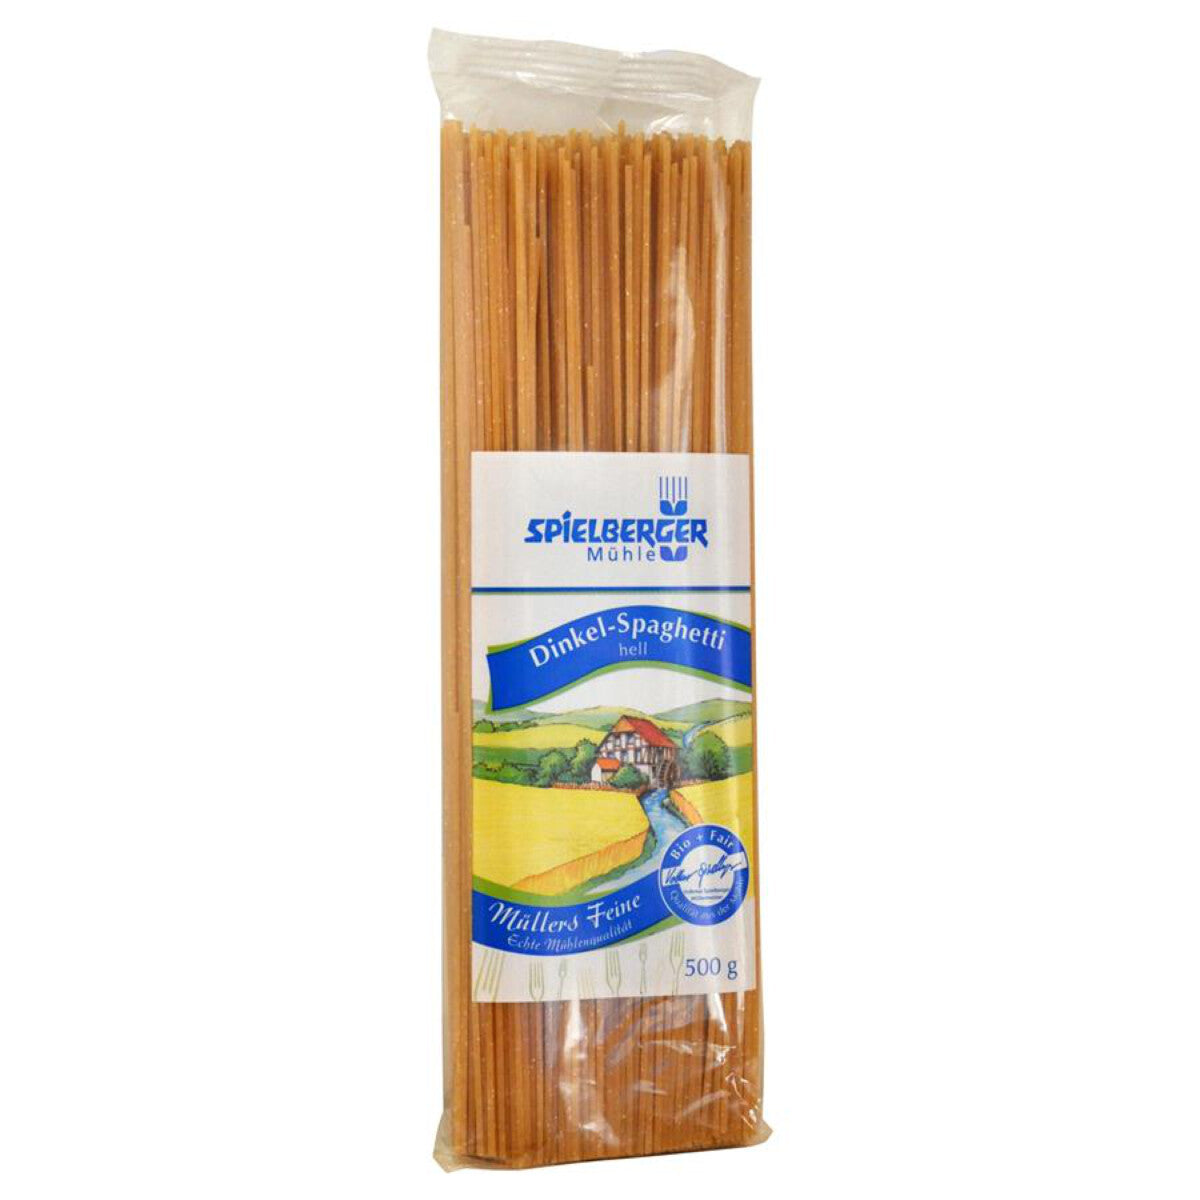 SPIELBERGER MÜHLE  Dinkel-Spaghetti hell - 500 g